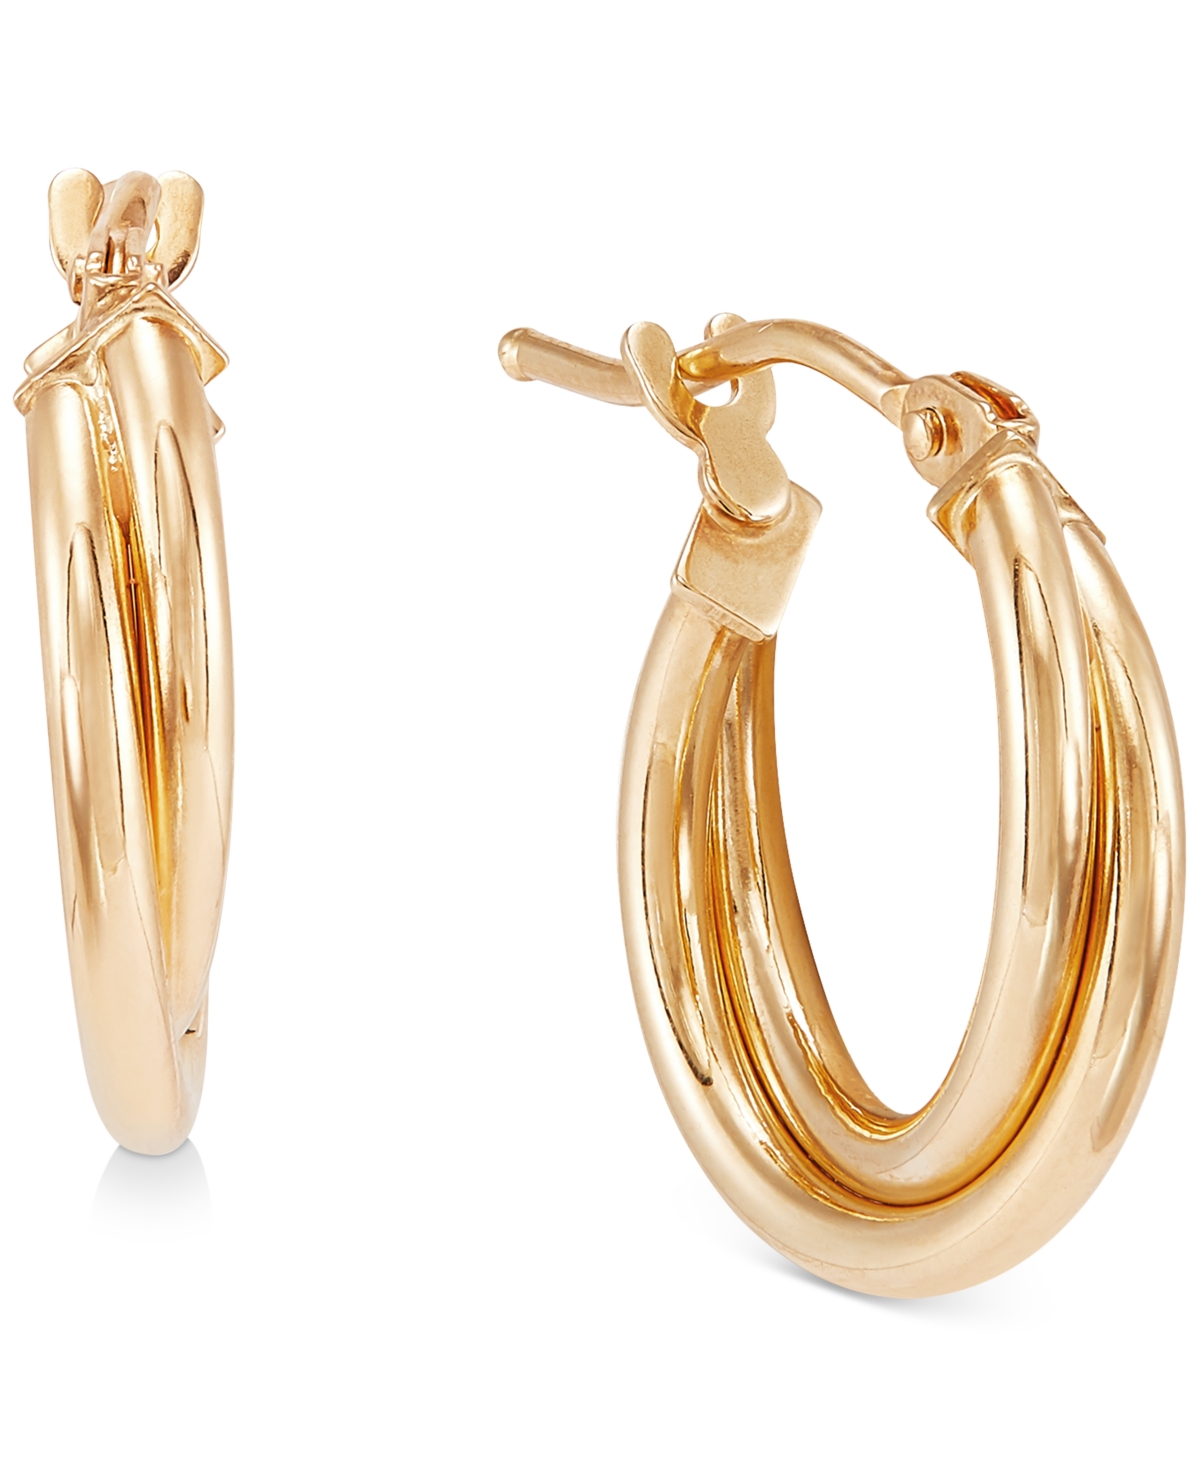 Double Twist Hoop Earrings in 10k Gold (10mm) - Gold